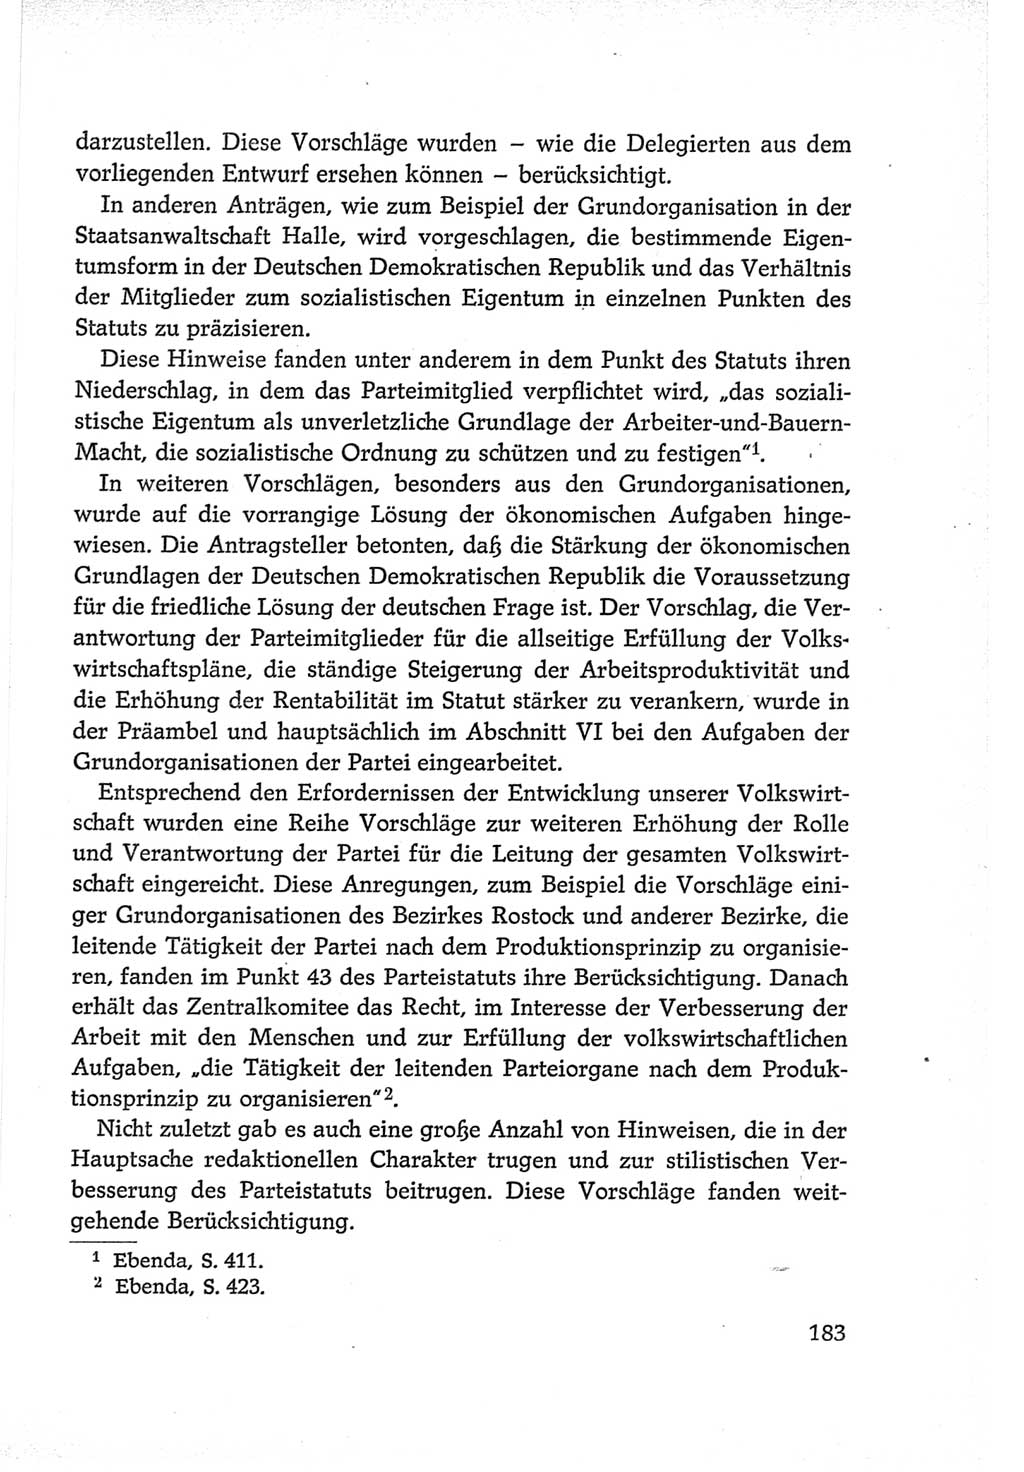 Protokoll der Verhandlungen des Ⅵ. Parteitages der Sozialistischen Einheitspartei Deutschlands (SED) [Deutsche Demokratische Republik (DDR)] 1963, Band Ⅱ, Seite 183 (Prot. Verh. Ⅵ. PT SED DDR 1963, Bd. Ⅱ, S. 183)